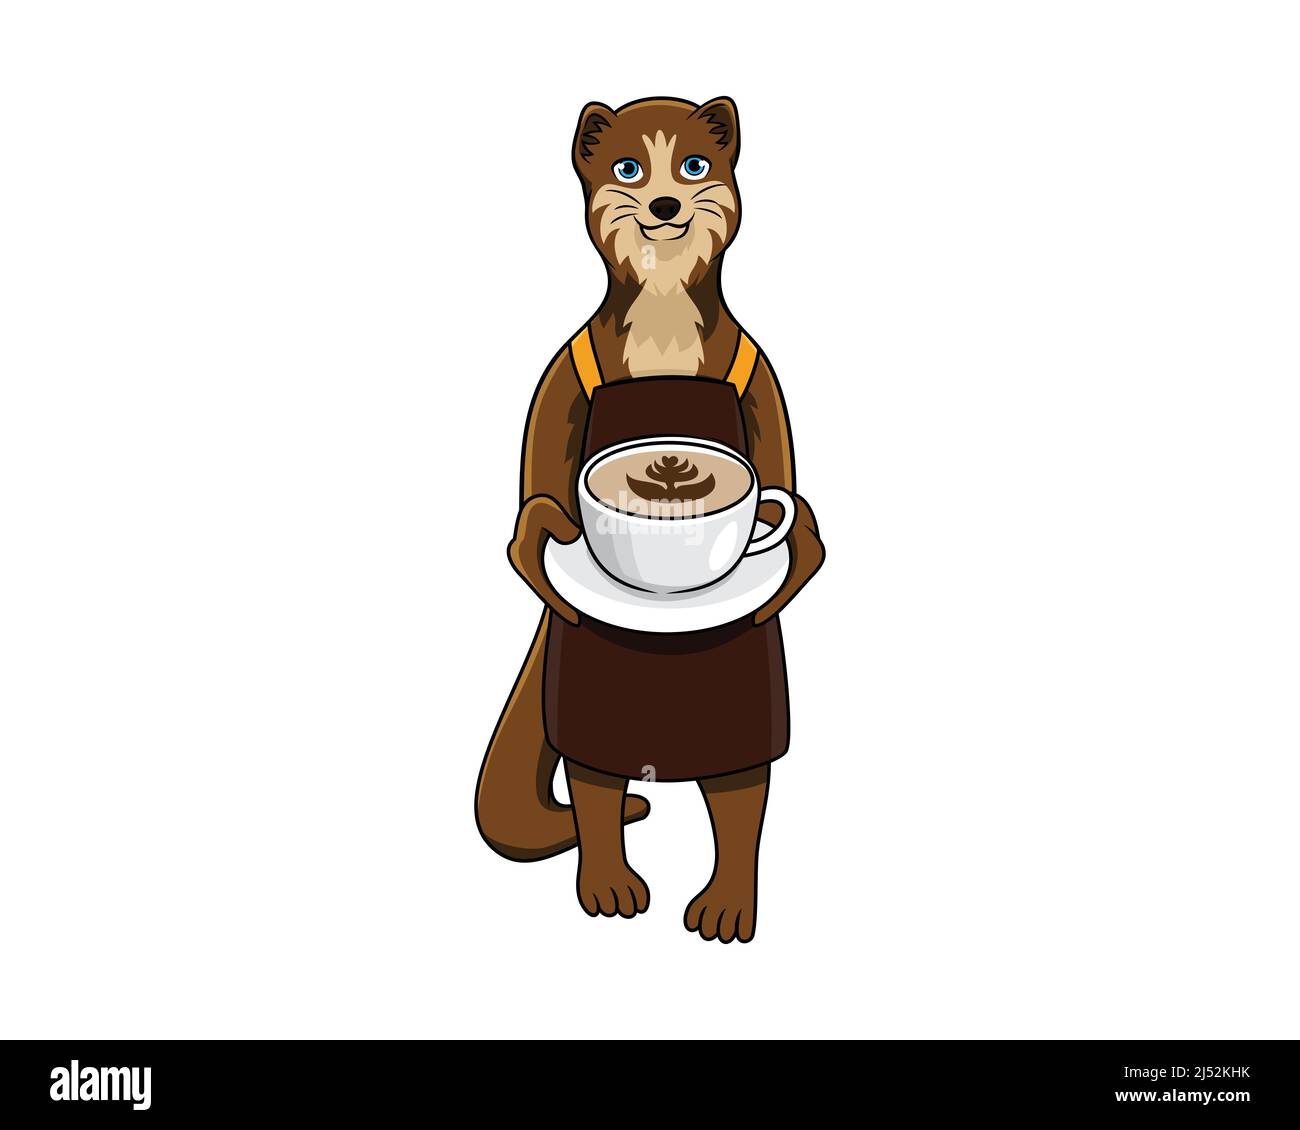 La mascotte Civet détaillée sert une tasse de café Illustration Vector Illustration de Vecteur